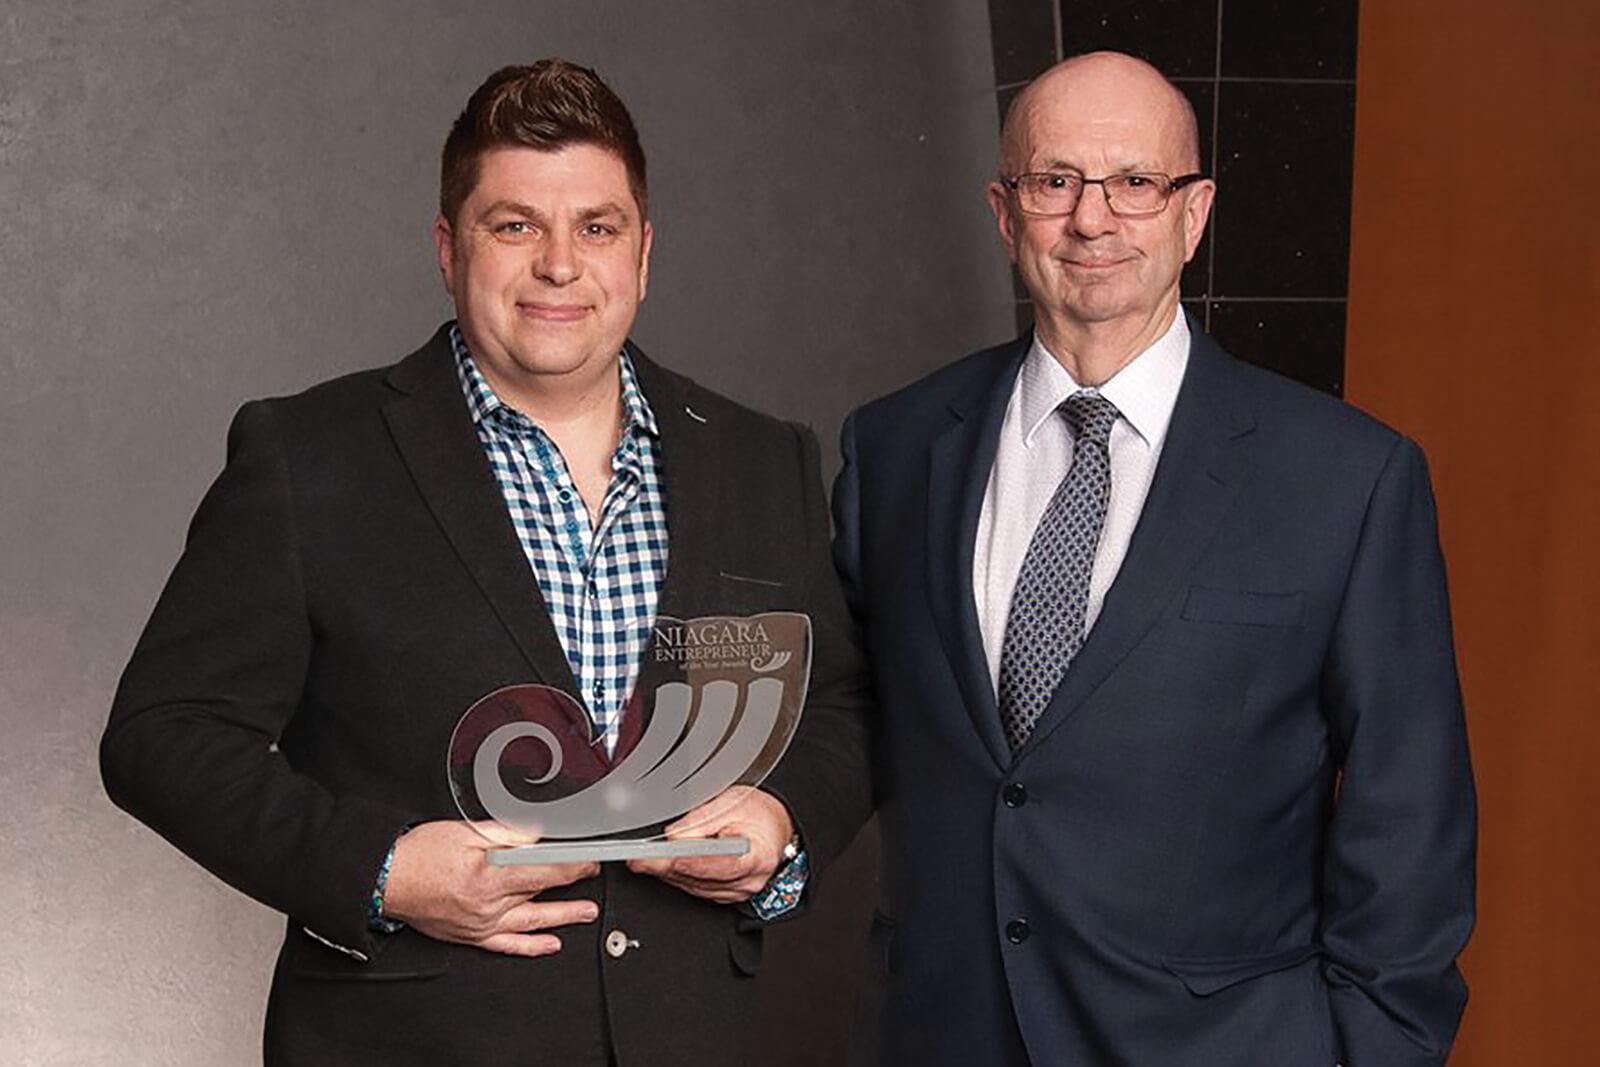 Aura wins entrepreneur award in Niagara